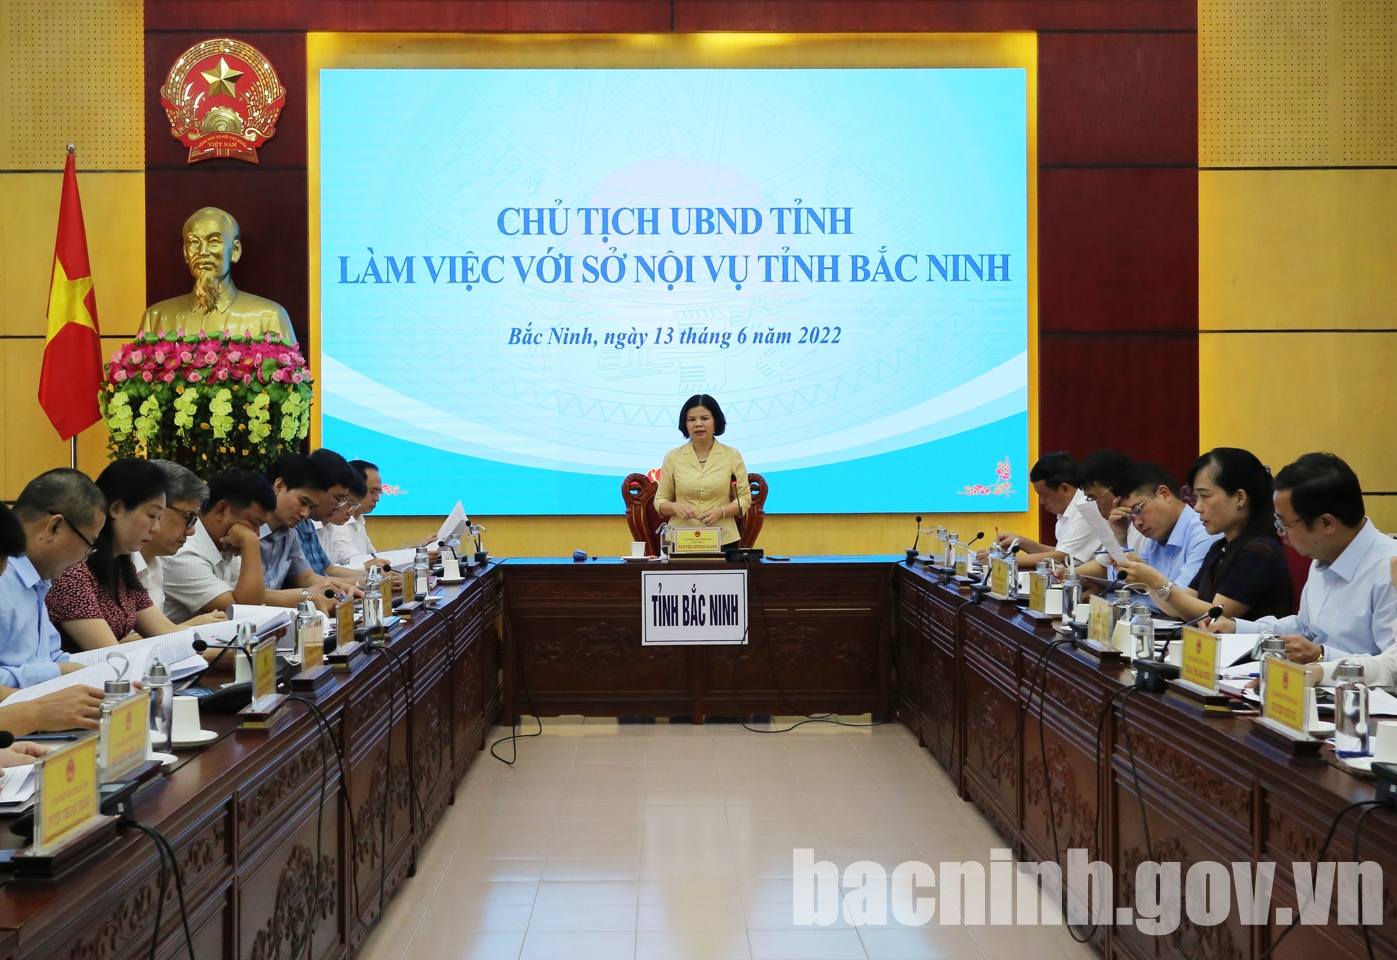 Chủ tịch UBND tỉnh Bắc Ninh làm việc với Sở Nội vụ